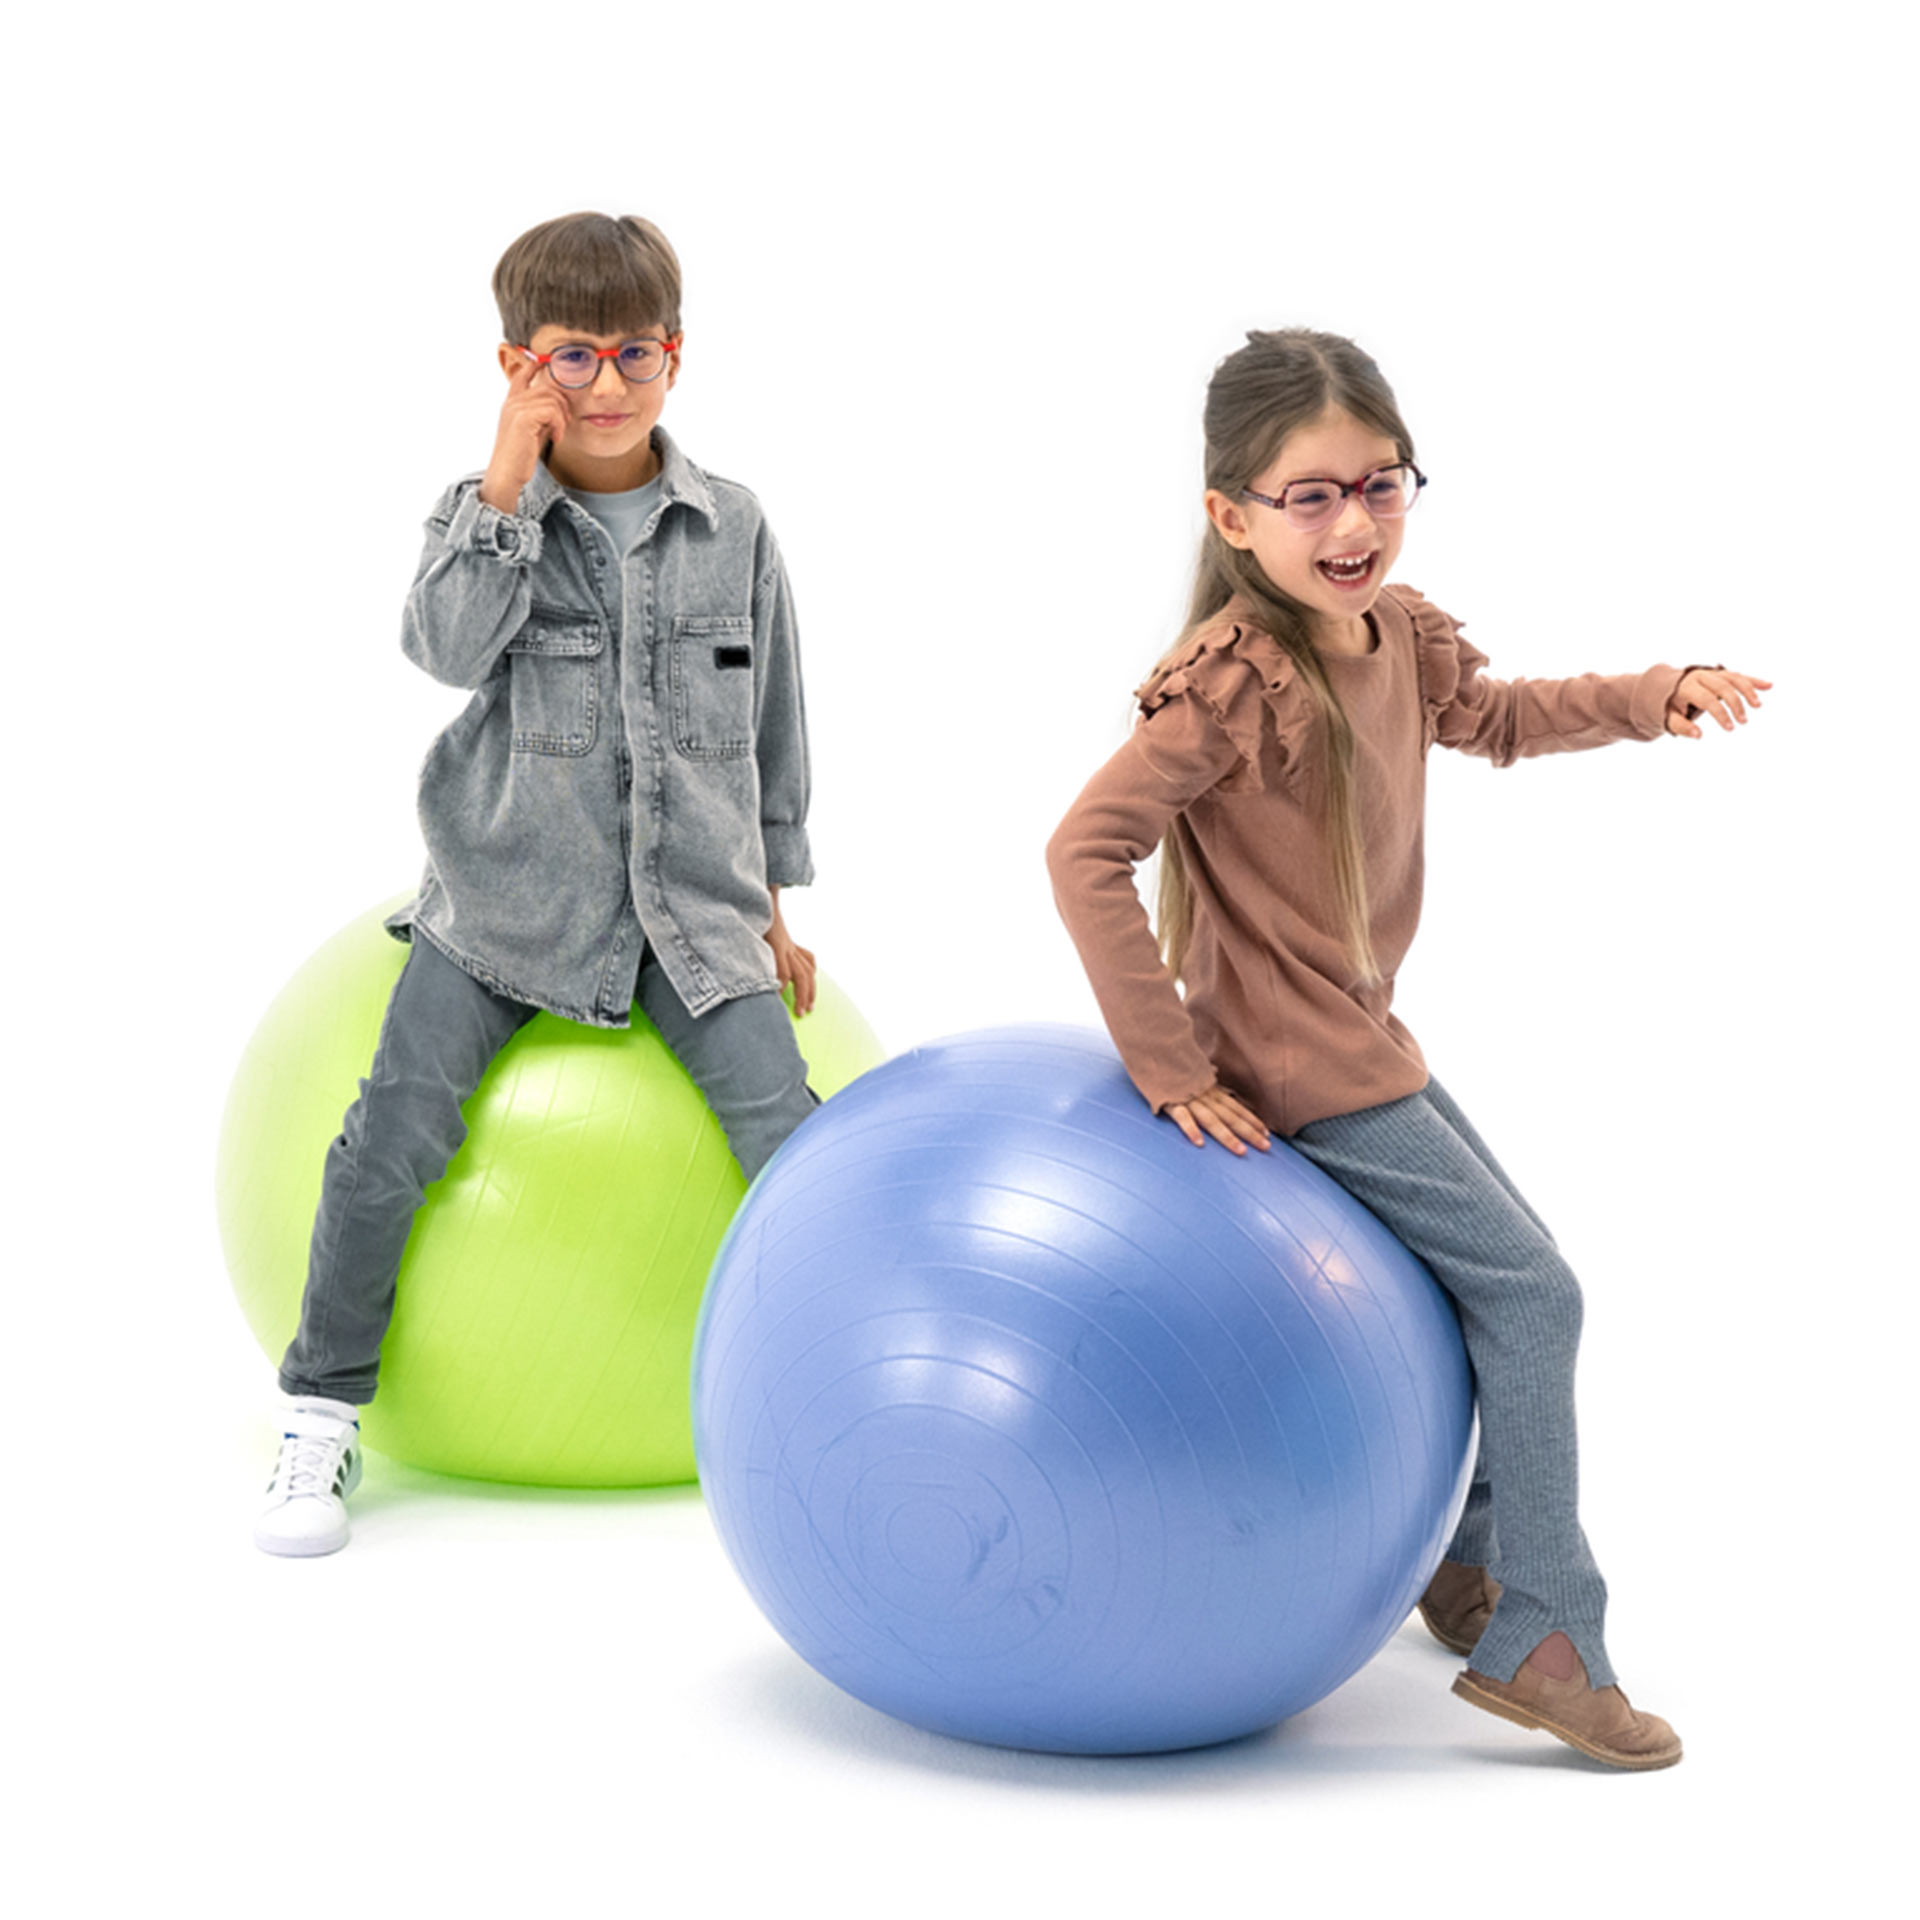 Un băiat și o fată, ambii purtând ochelari, se joacă cu mingi de gimnastică.